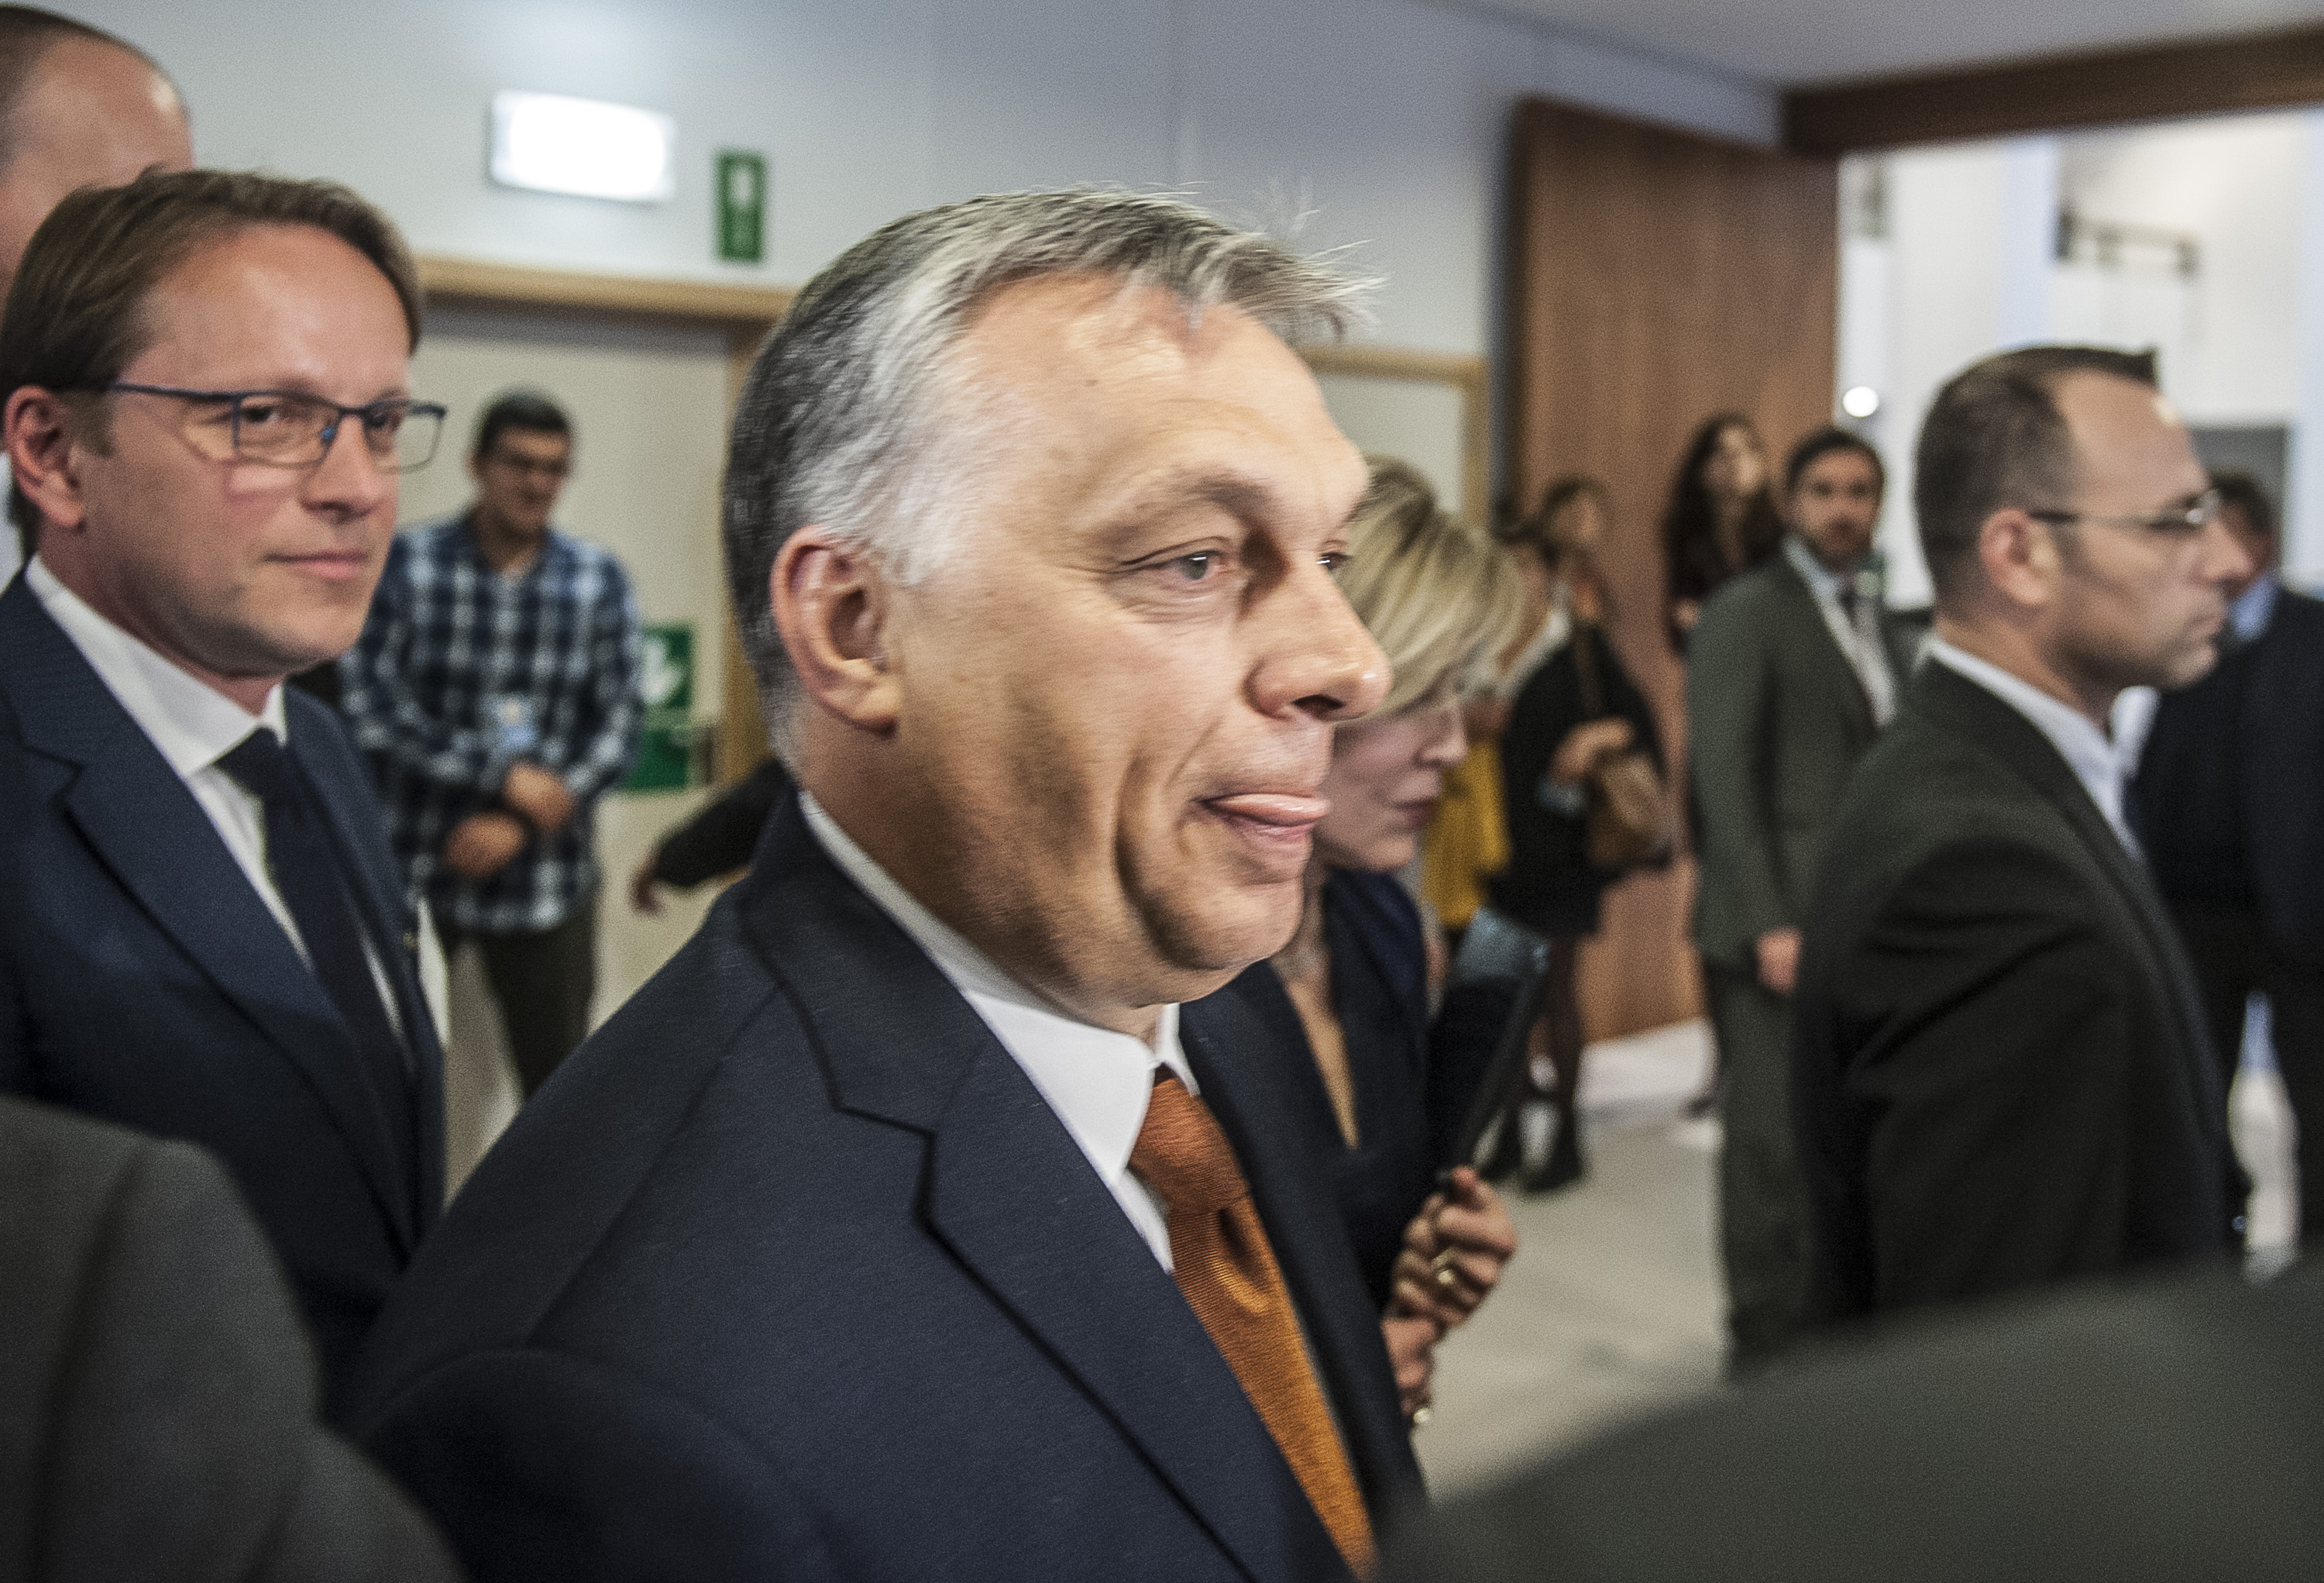 1,5 éve van előzetesben a két férfi, akik belügyi vezetők szerint meg akarták gyilkolni Orbánt